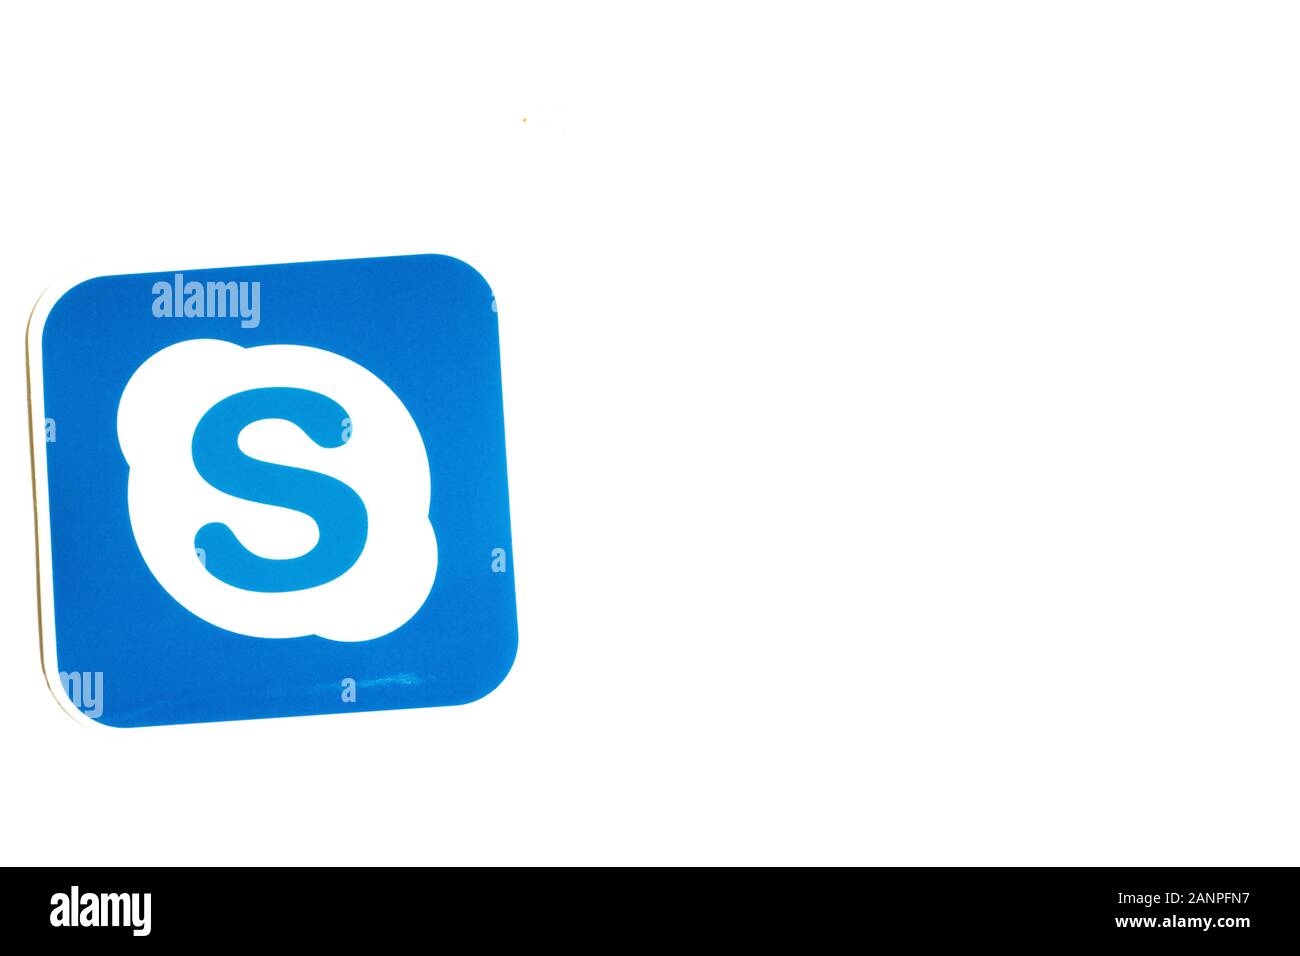 Los Angeles, Californie, États-Unis - 17 janvier 2020: Logo Skype sur fond blanc avec espace de copie. Icône des médias sociaux, éditorial illustratif Banque D'Images